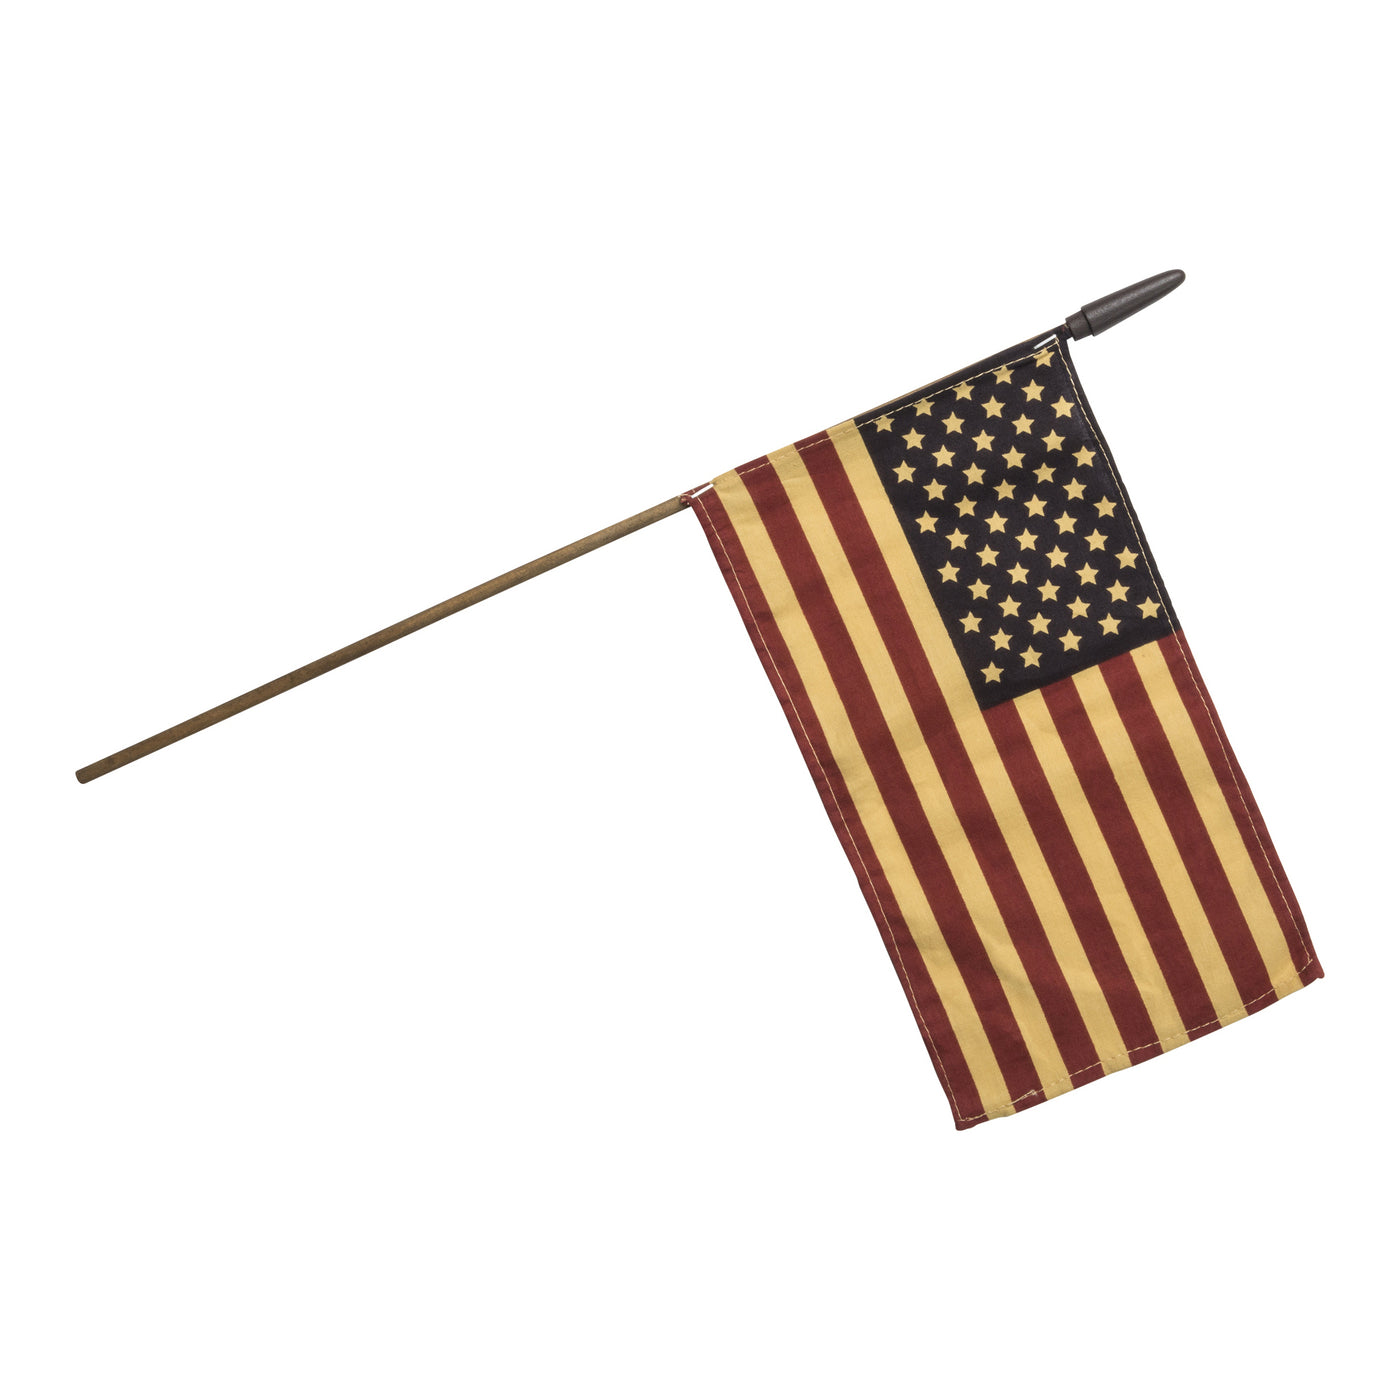 Primitive American Flag - Medium